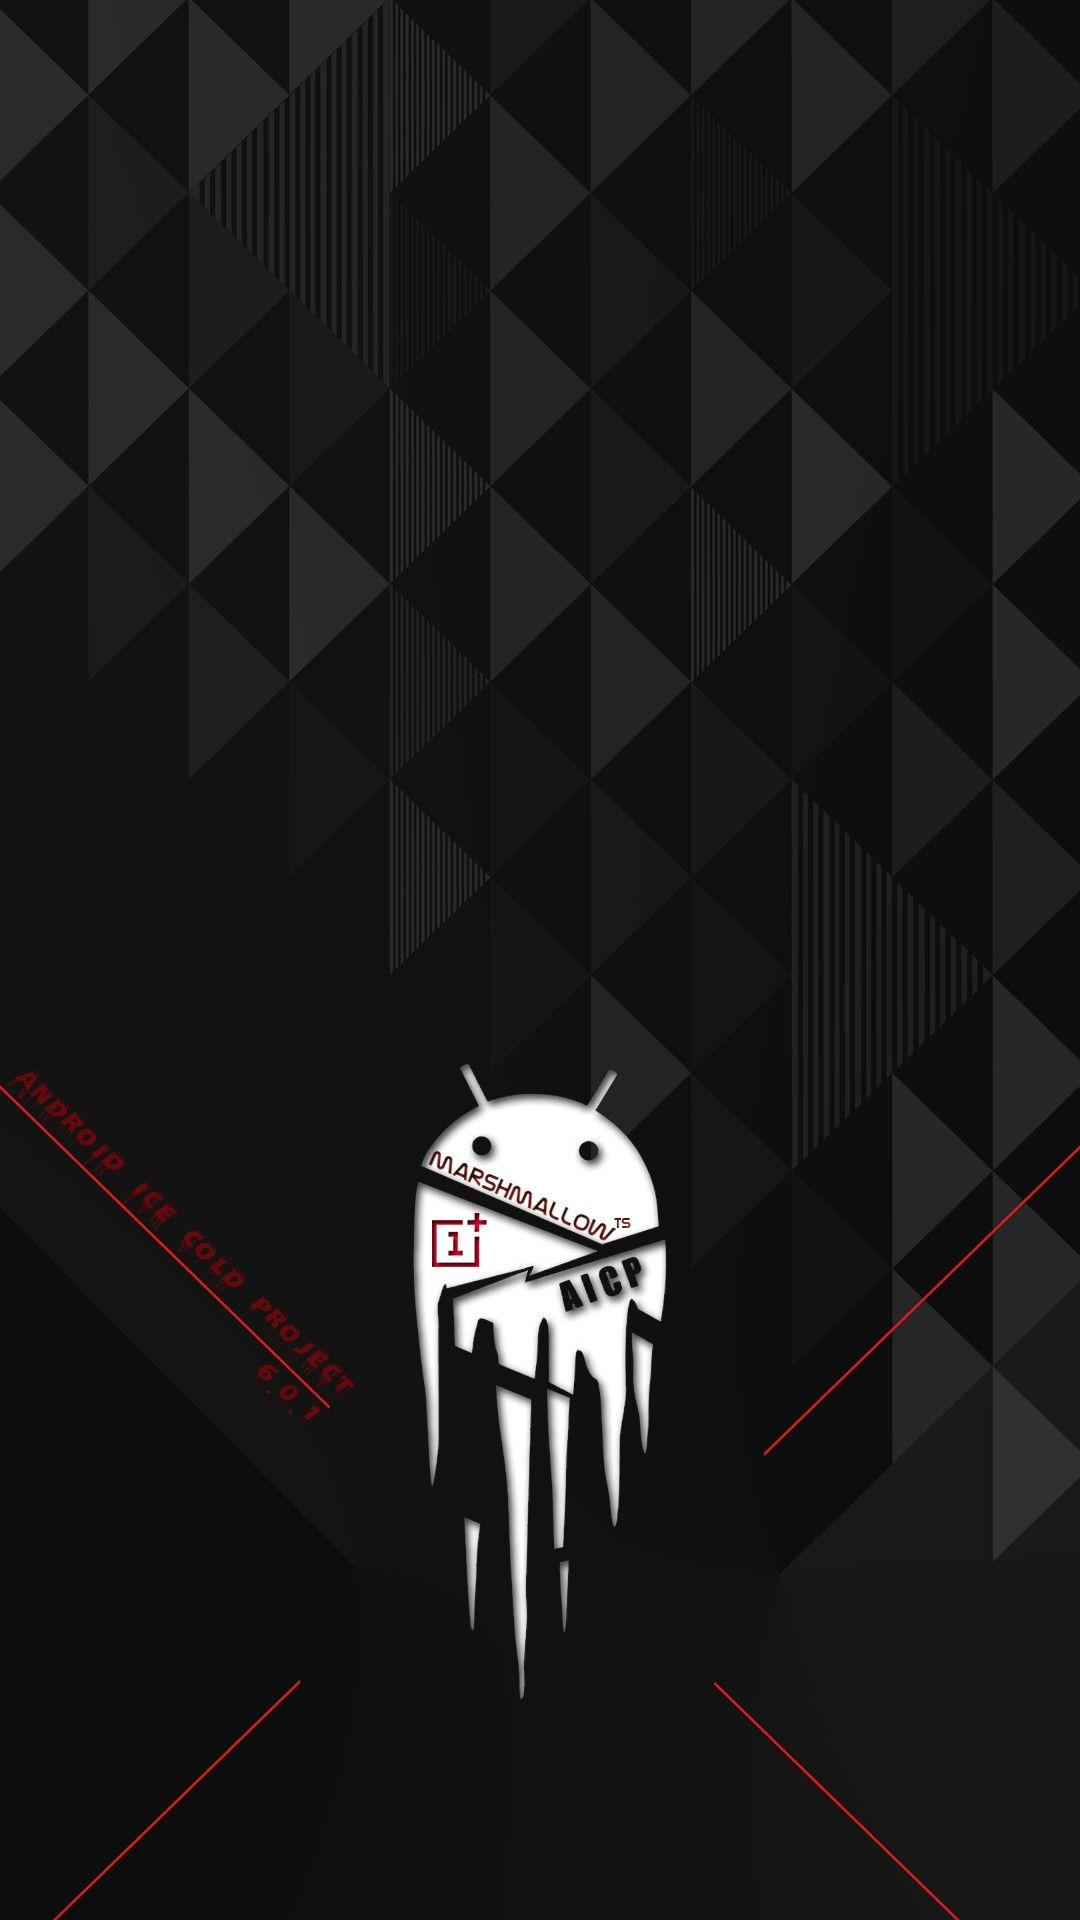 Wallpaper, black, illustration, text, logo, Android